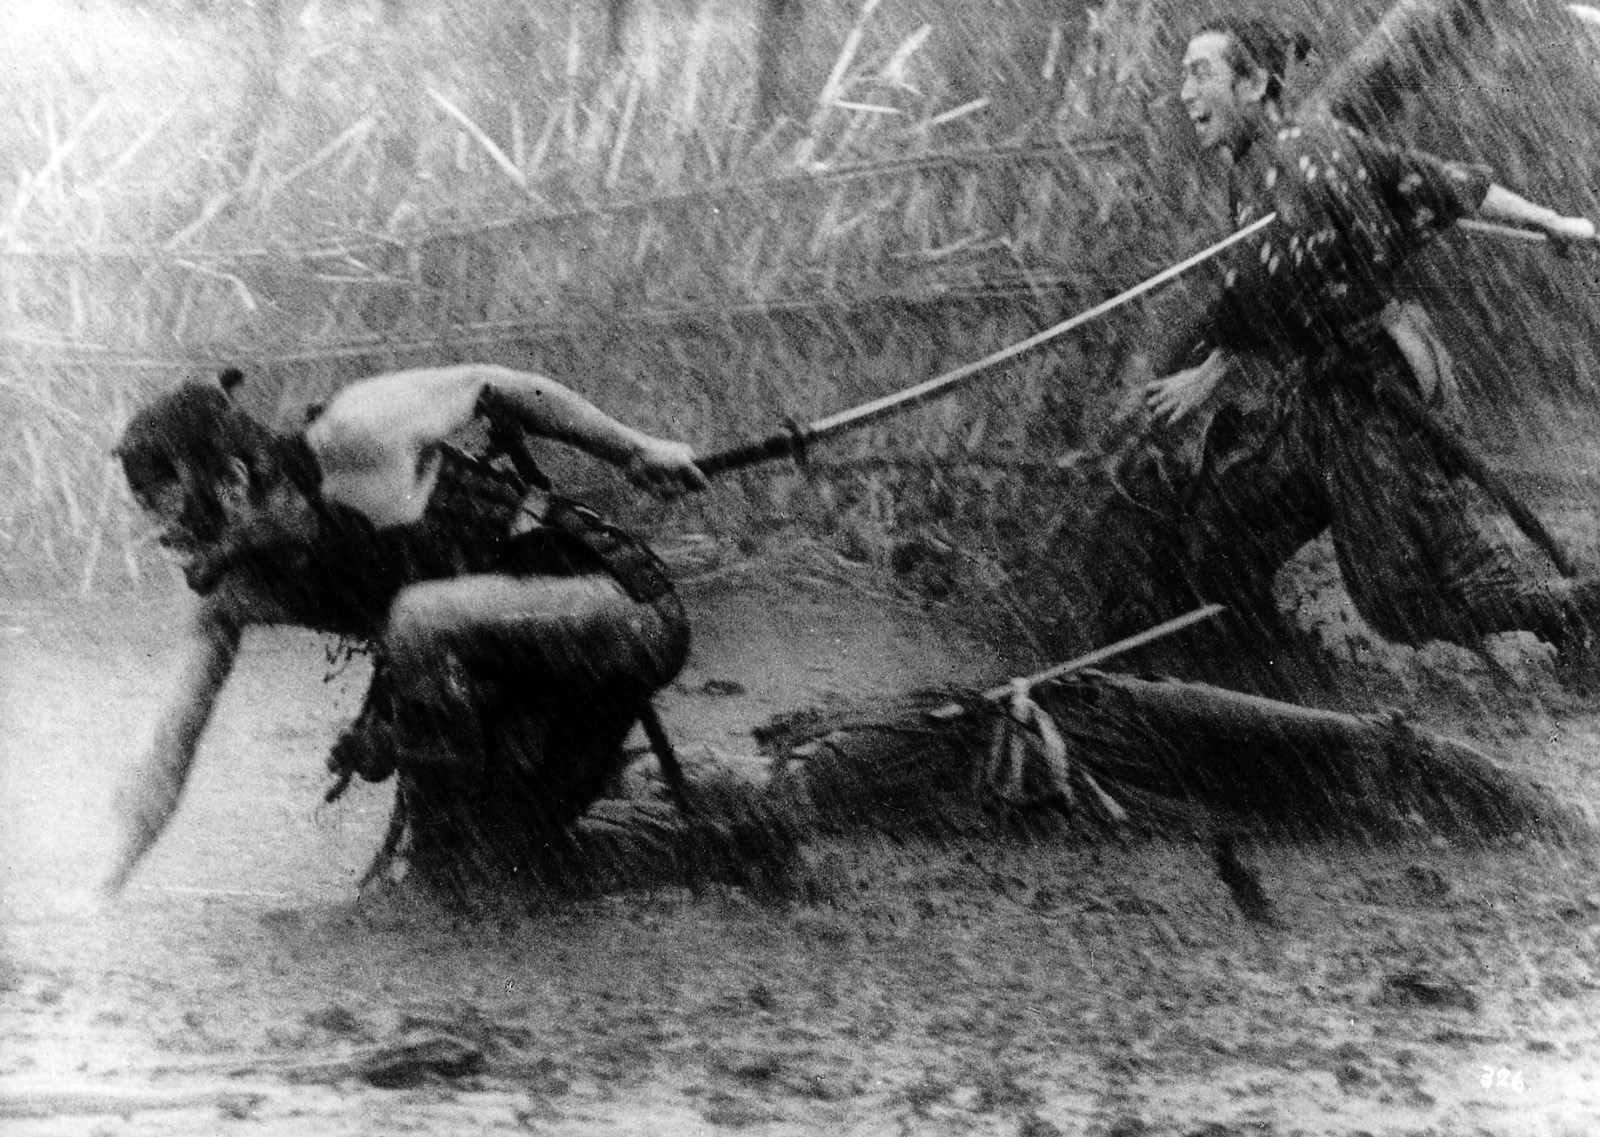 CuadroXCuadro: ‘Los siete samuráis’ o la primera película de acción de la historia